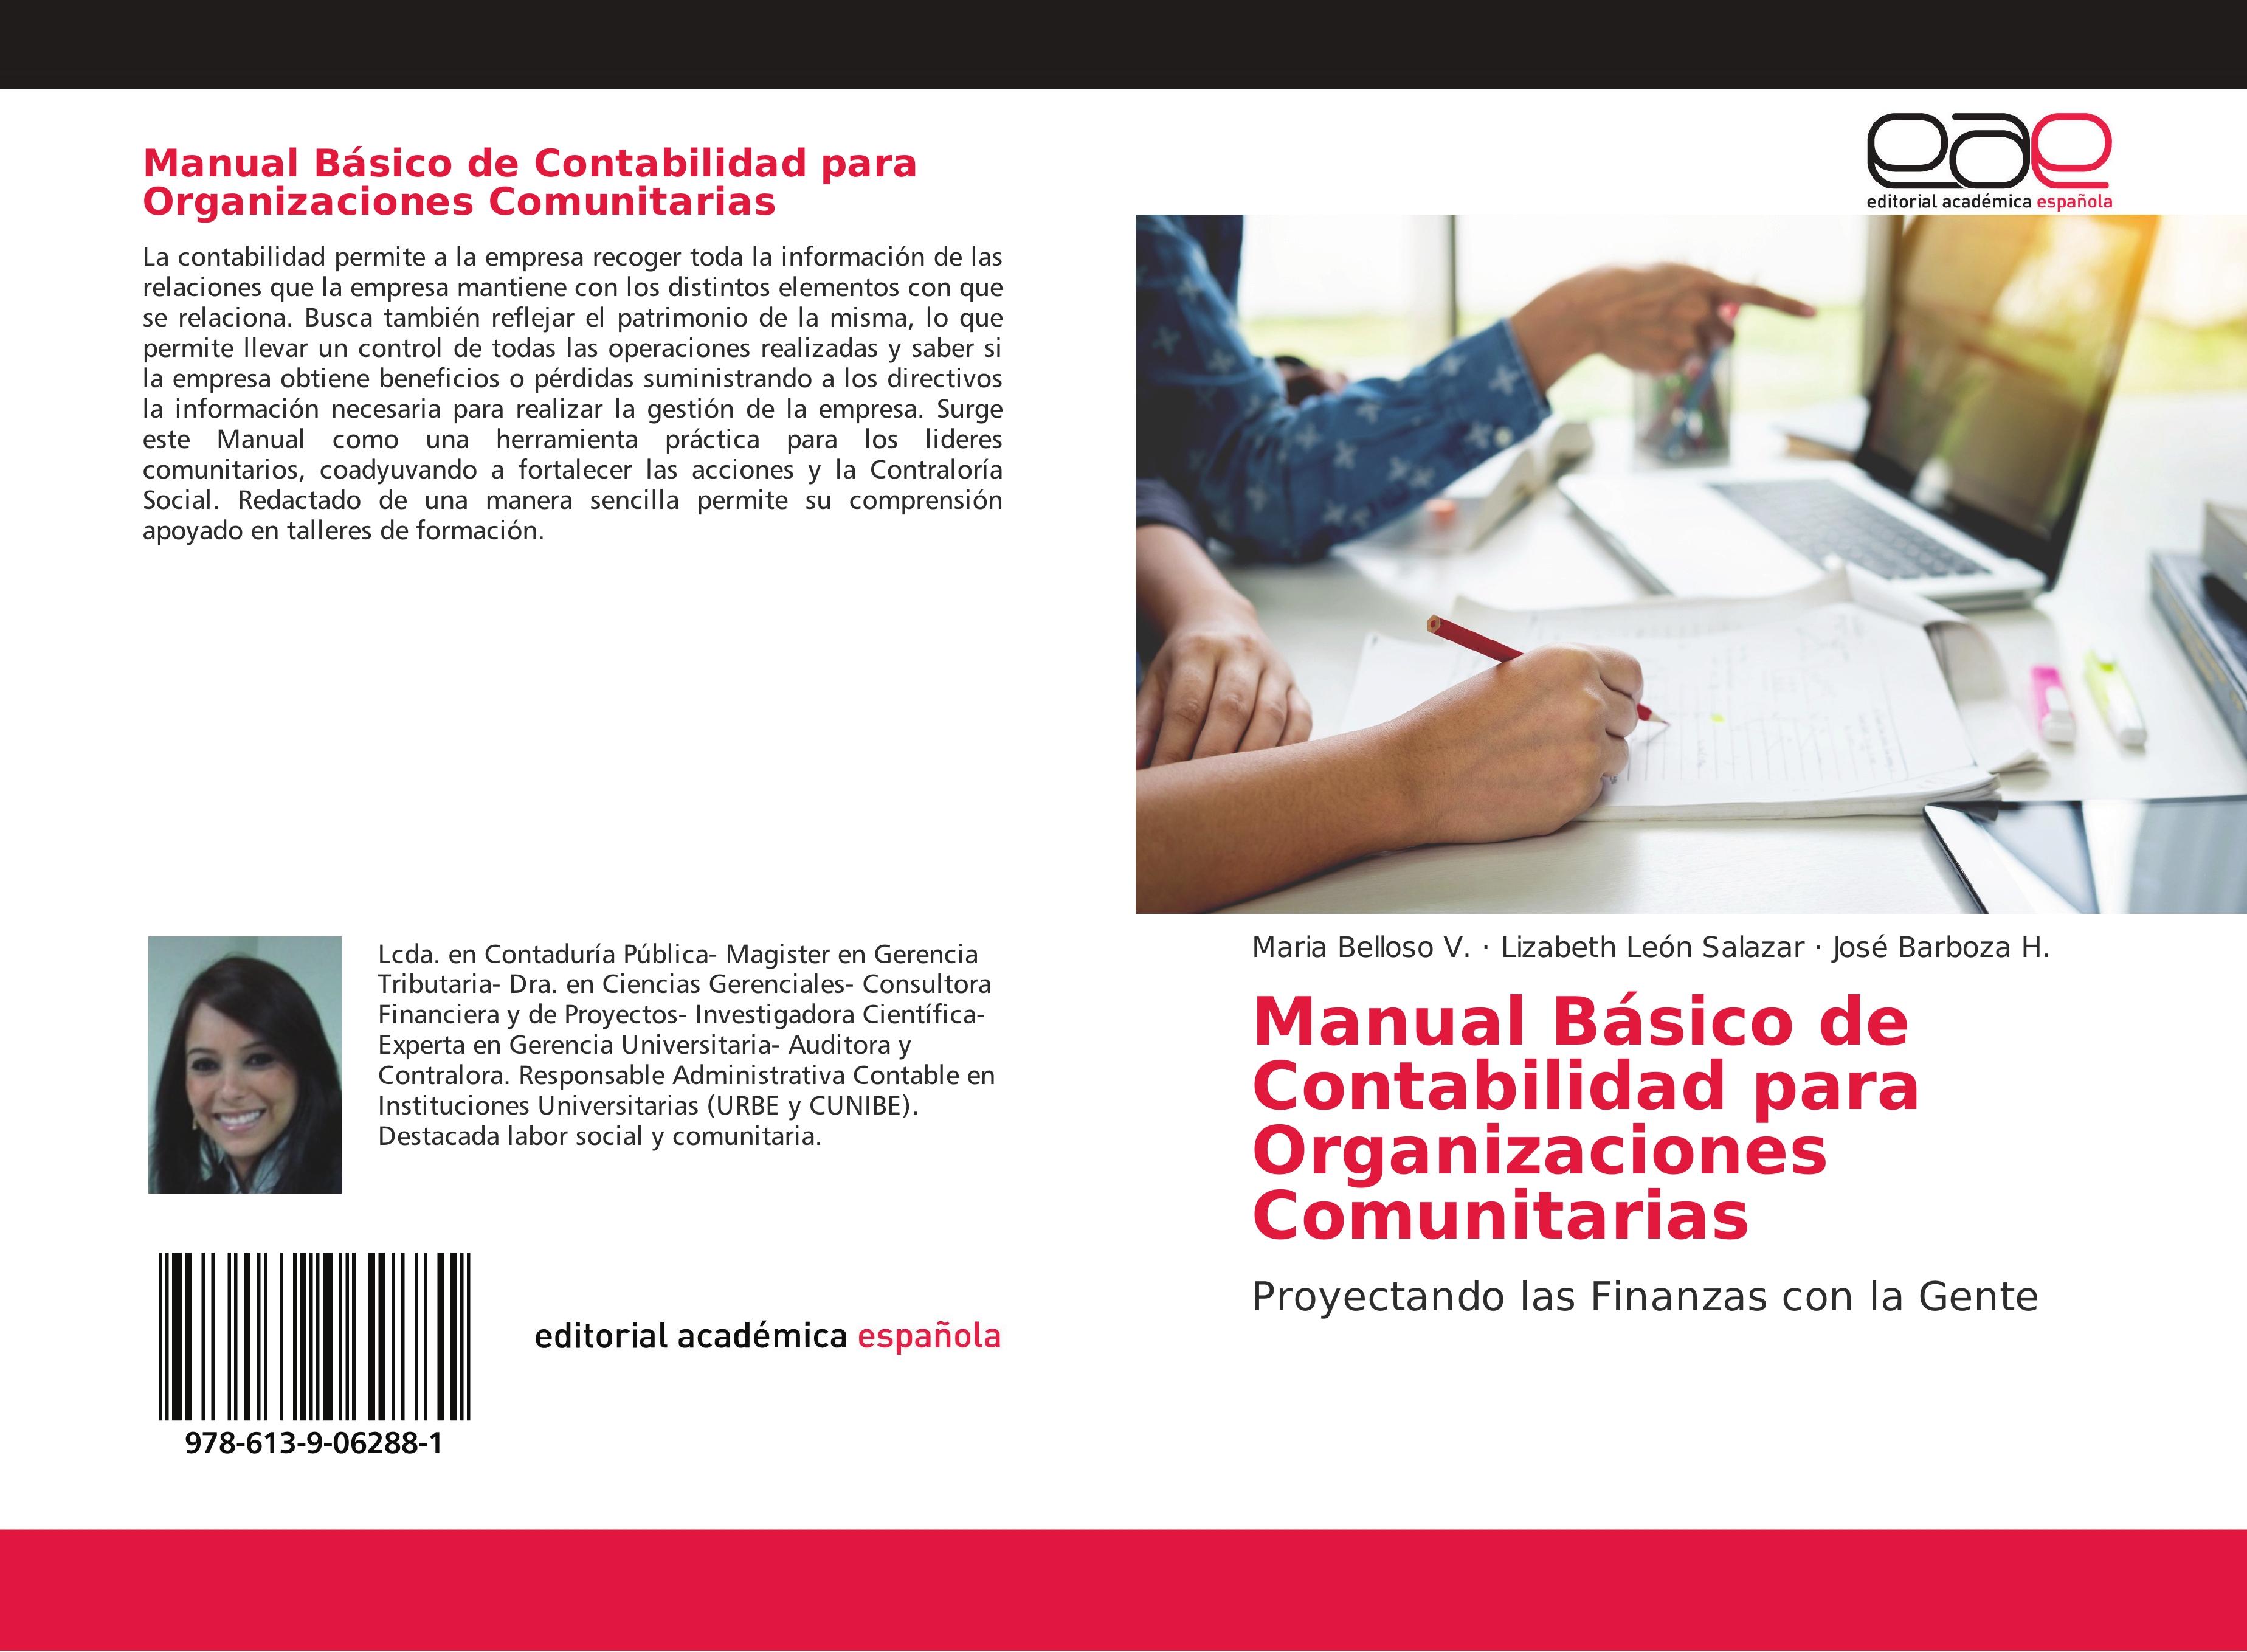 Manual Básico de Contabilidad para Organizaciones Comunitarias - Proyectando las Finanzas con la Gente